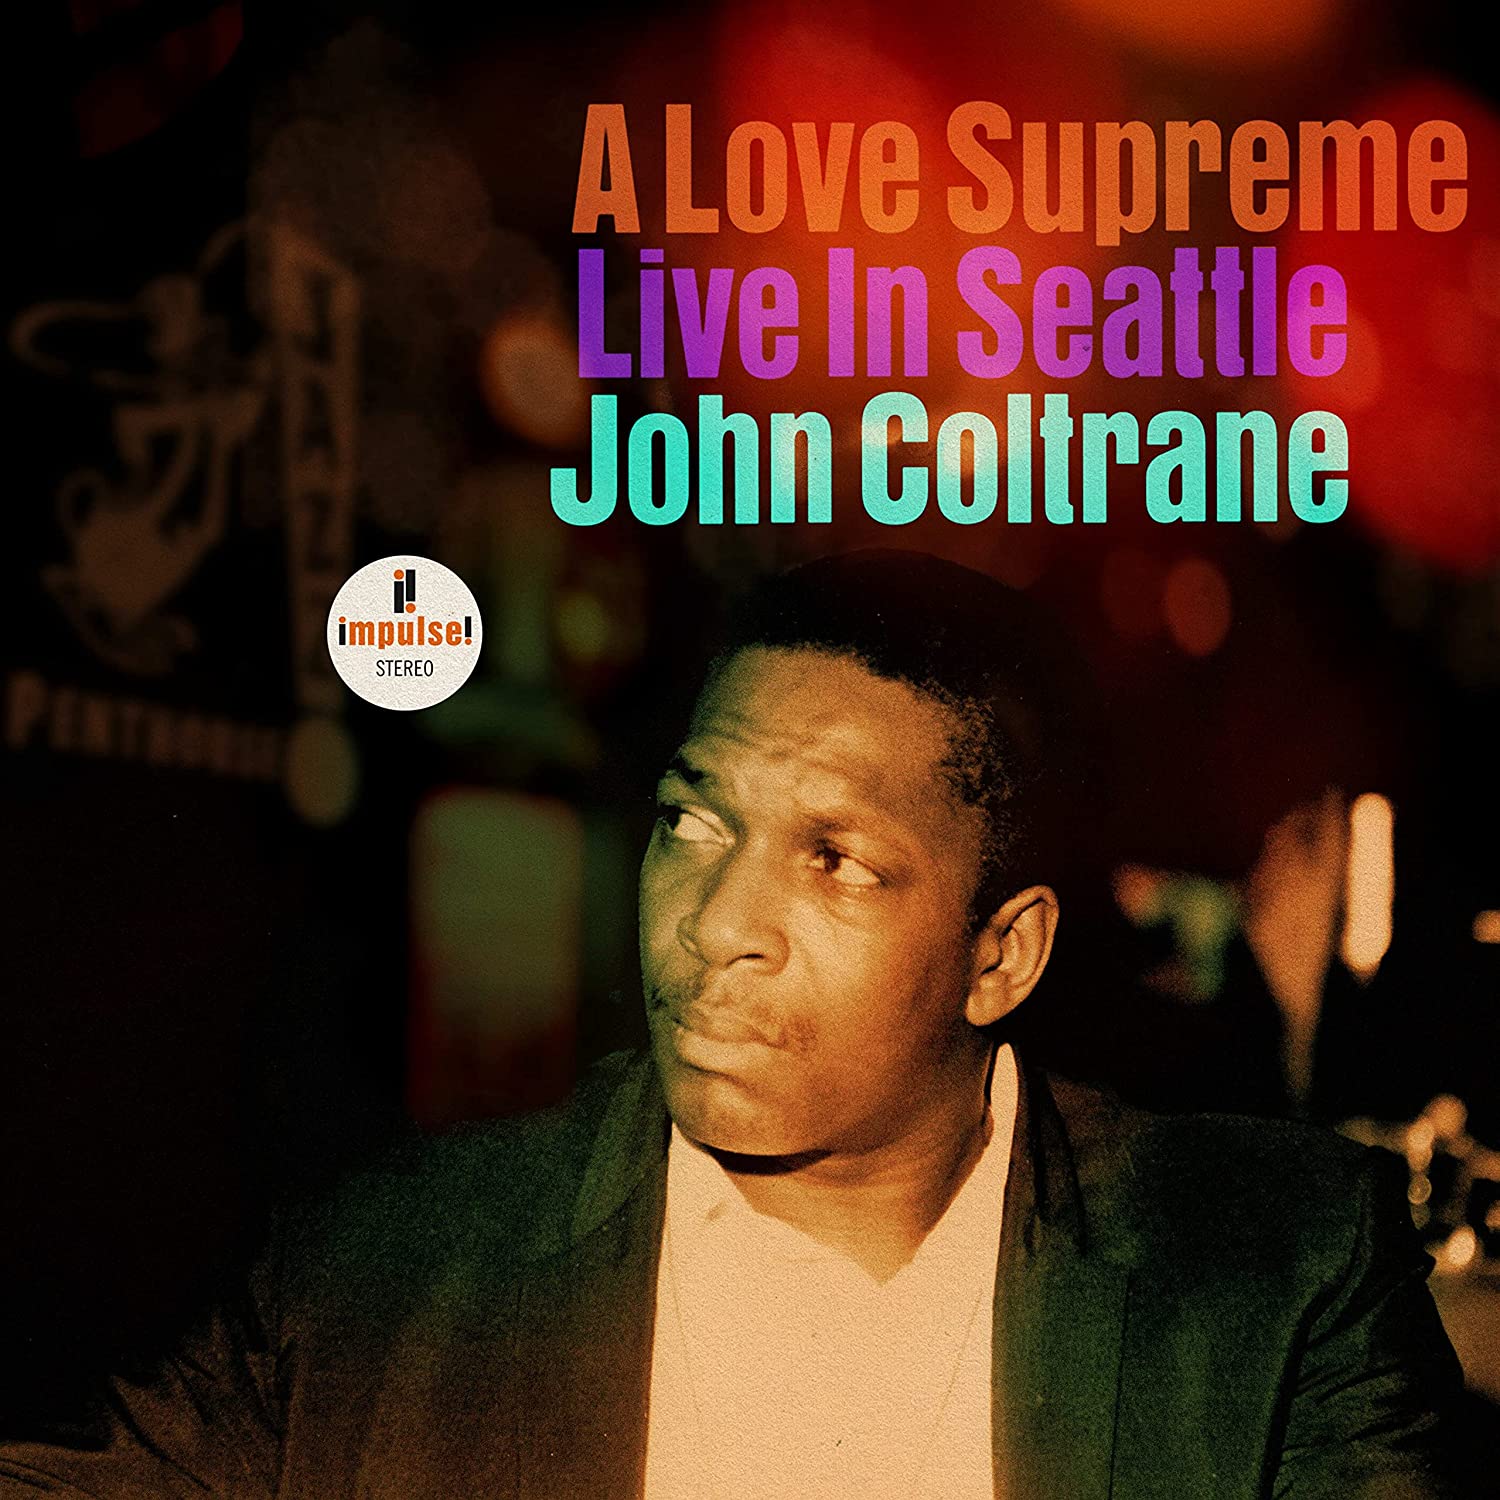 John Coltrane, A Love Supreme: Live in Seattle, Impulse! migliori dischi jazz 2021